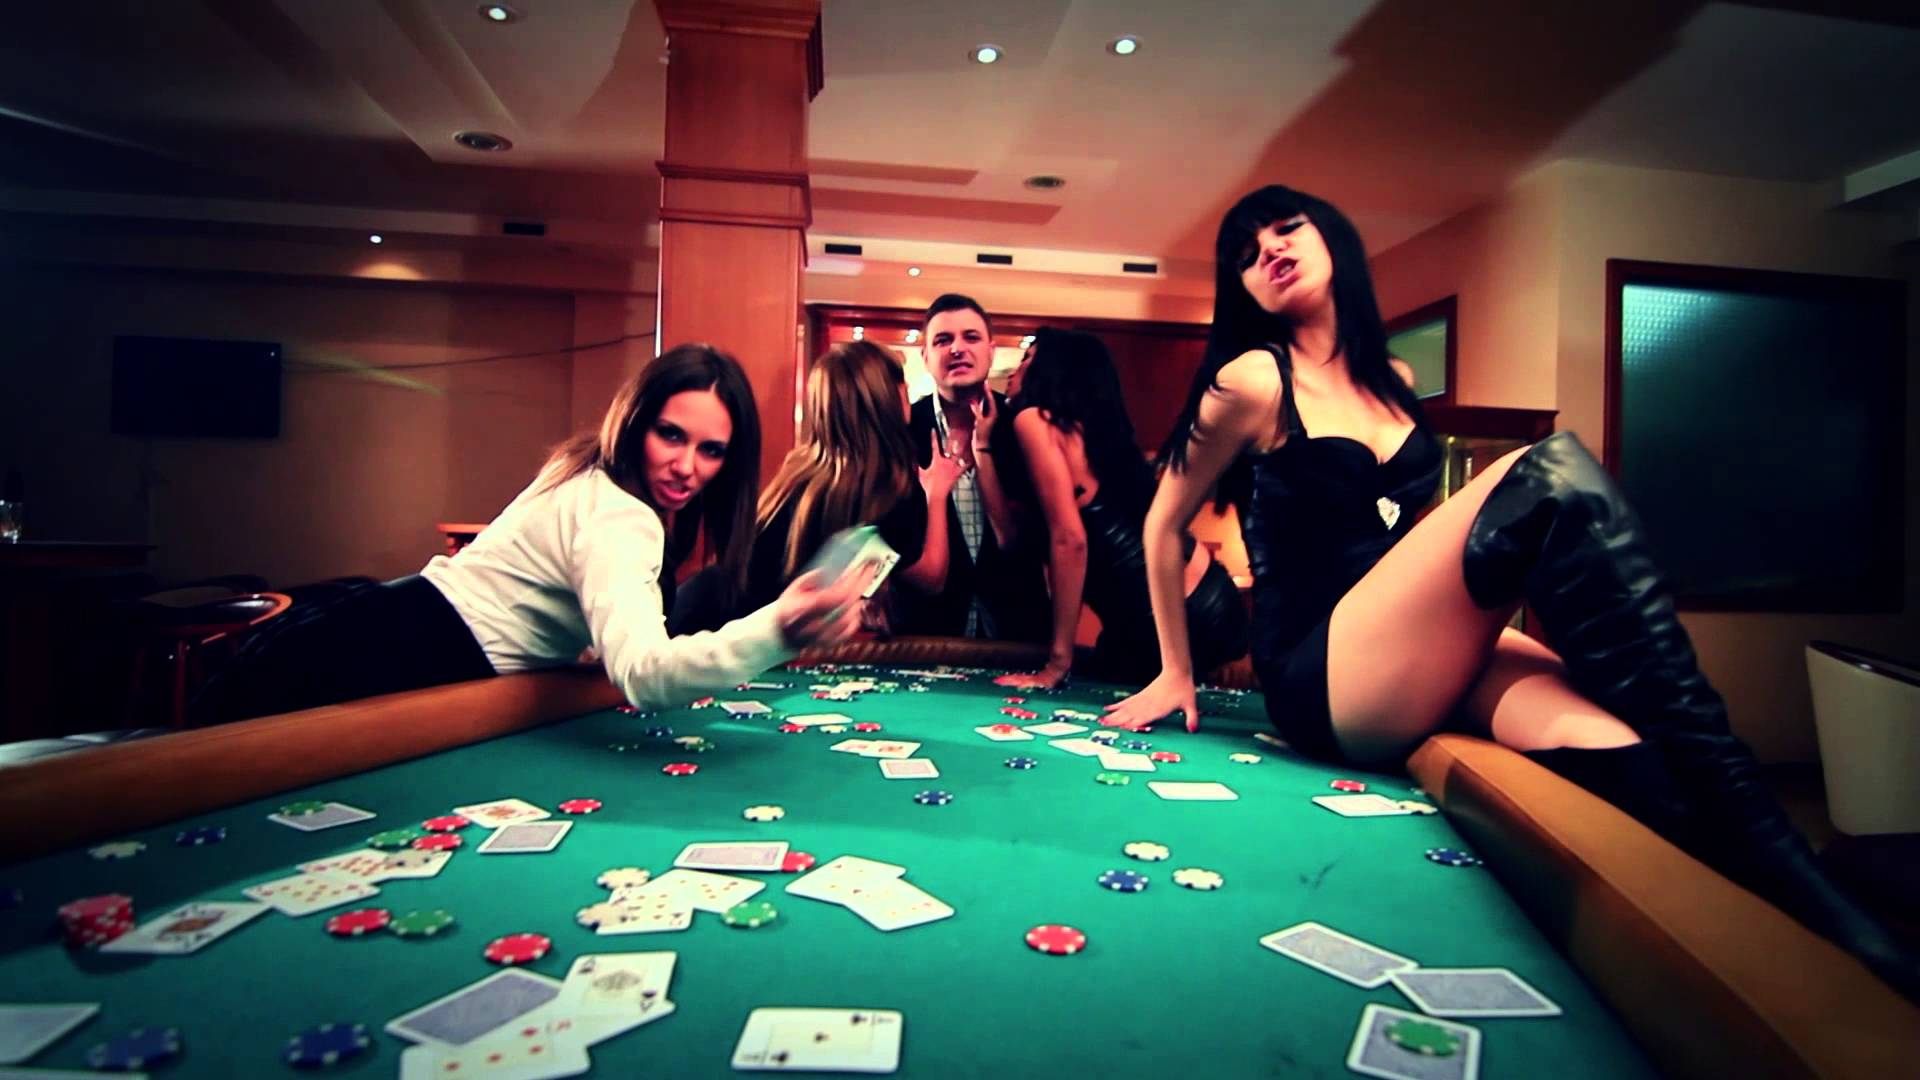 Поиграли в карты на раздевание. Лас Вегас казино девушки крупье. Красивая девушка казино. Стрип казино. Стриптизерши в казино.